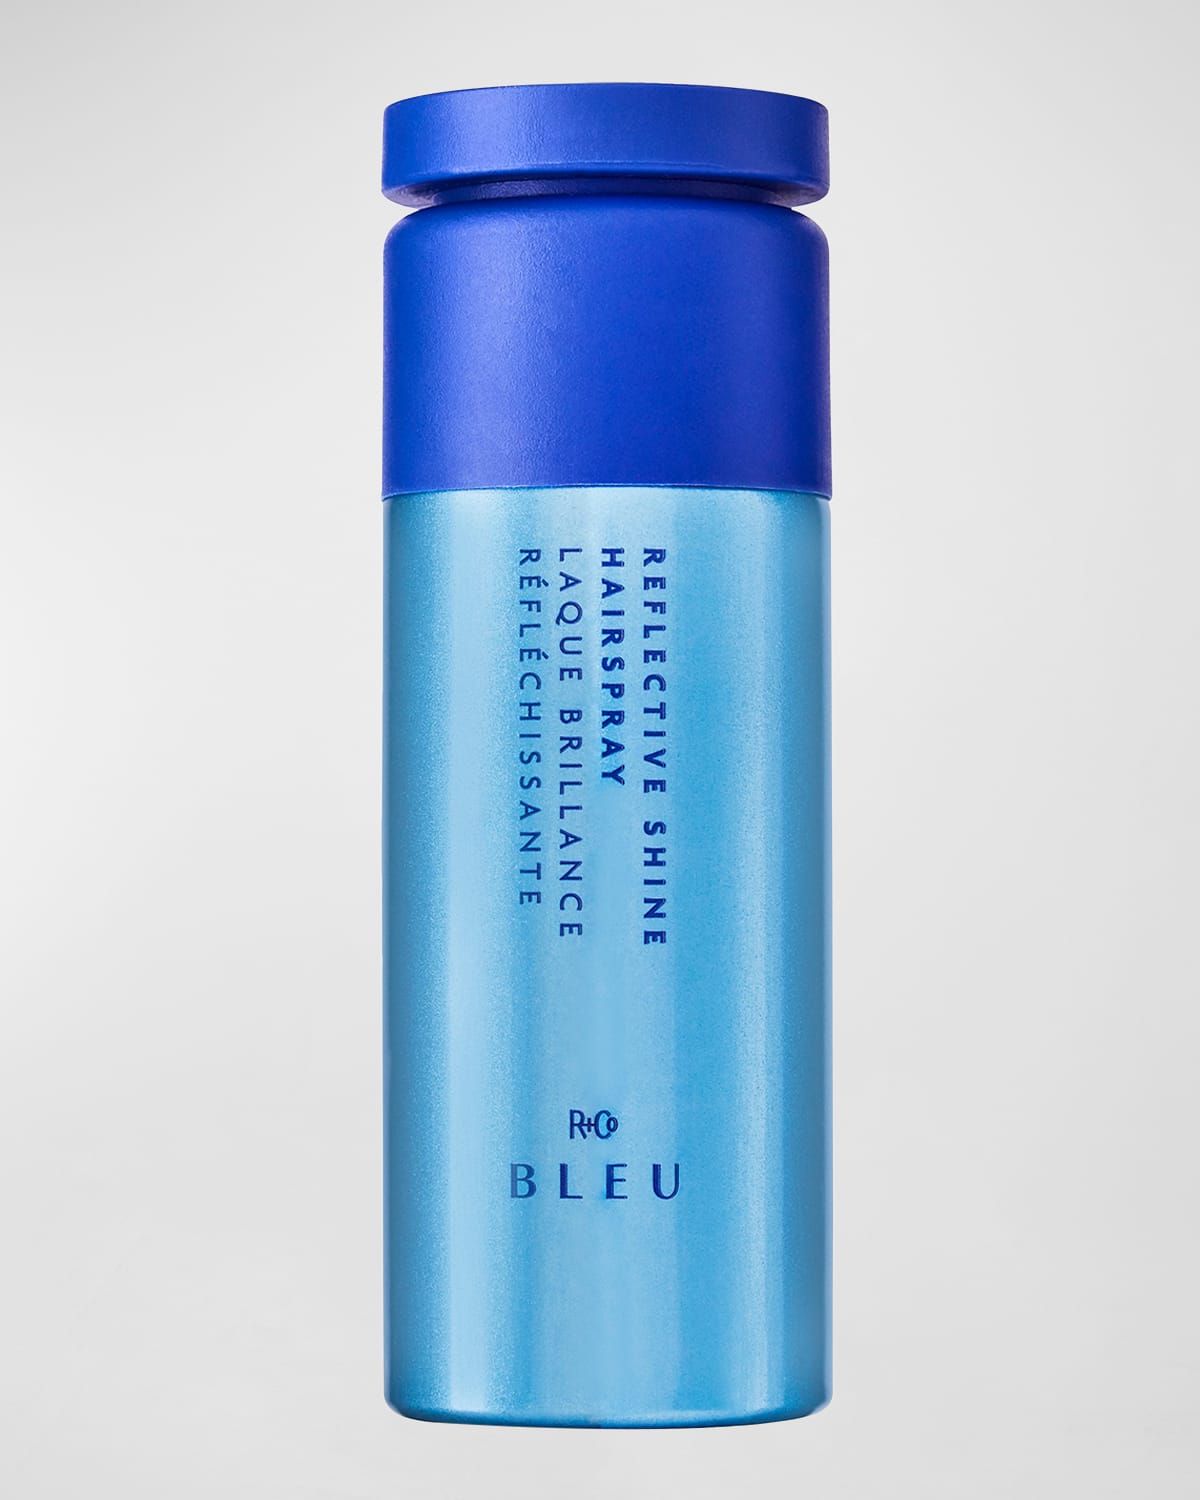 R+co Bleu 3 Oz. Bleu Reflective Shine Hairspray In Blue